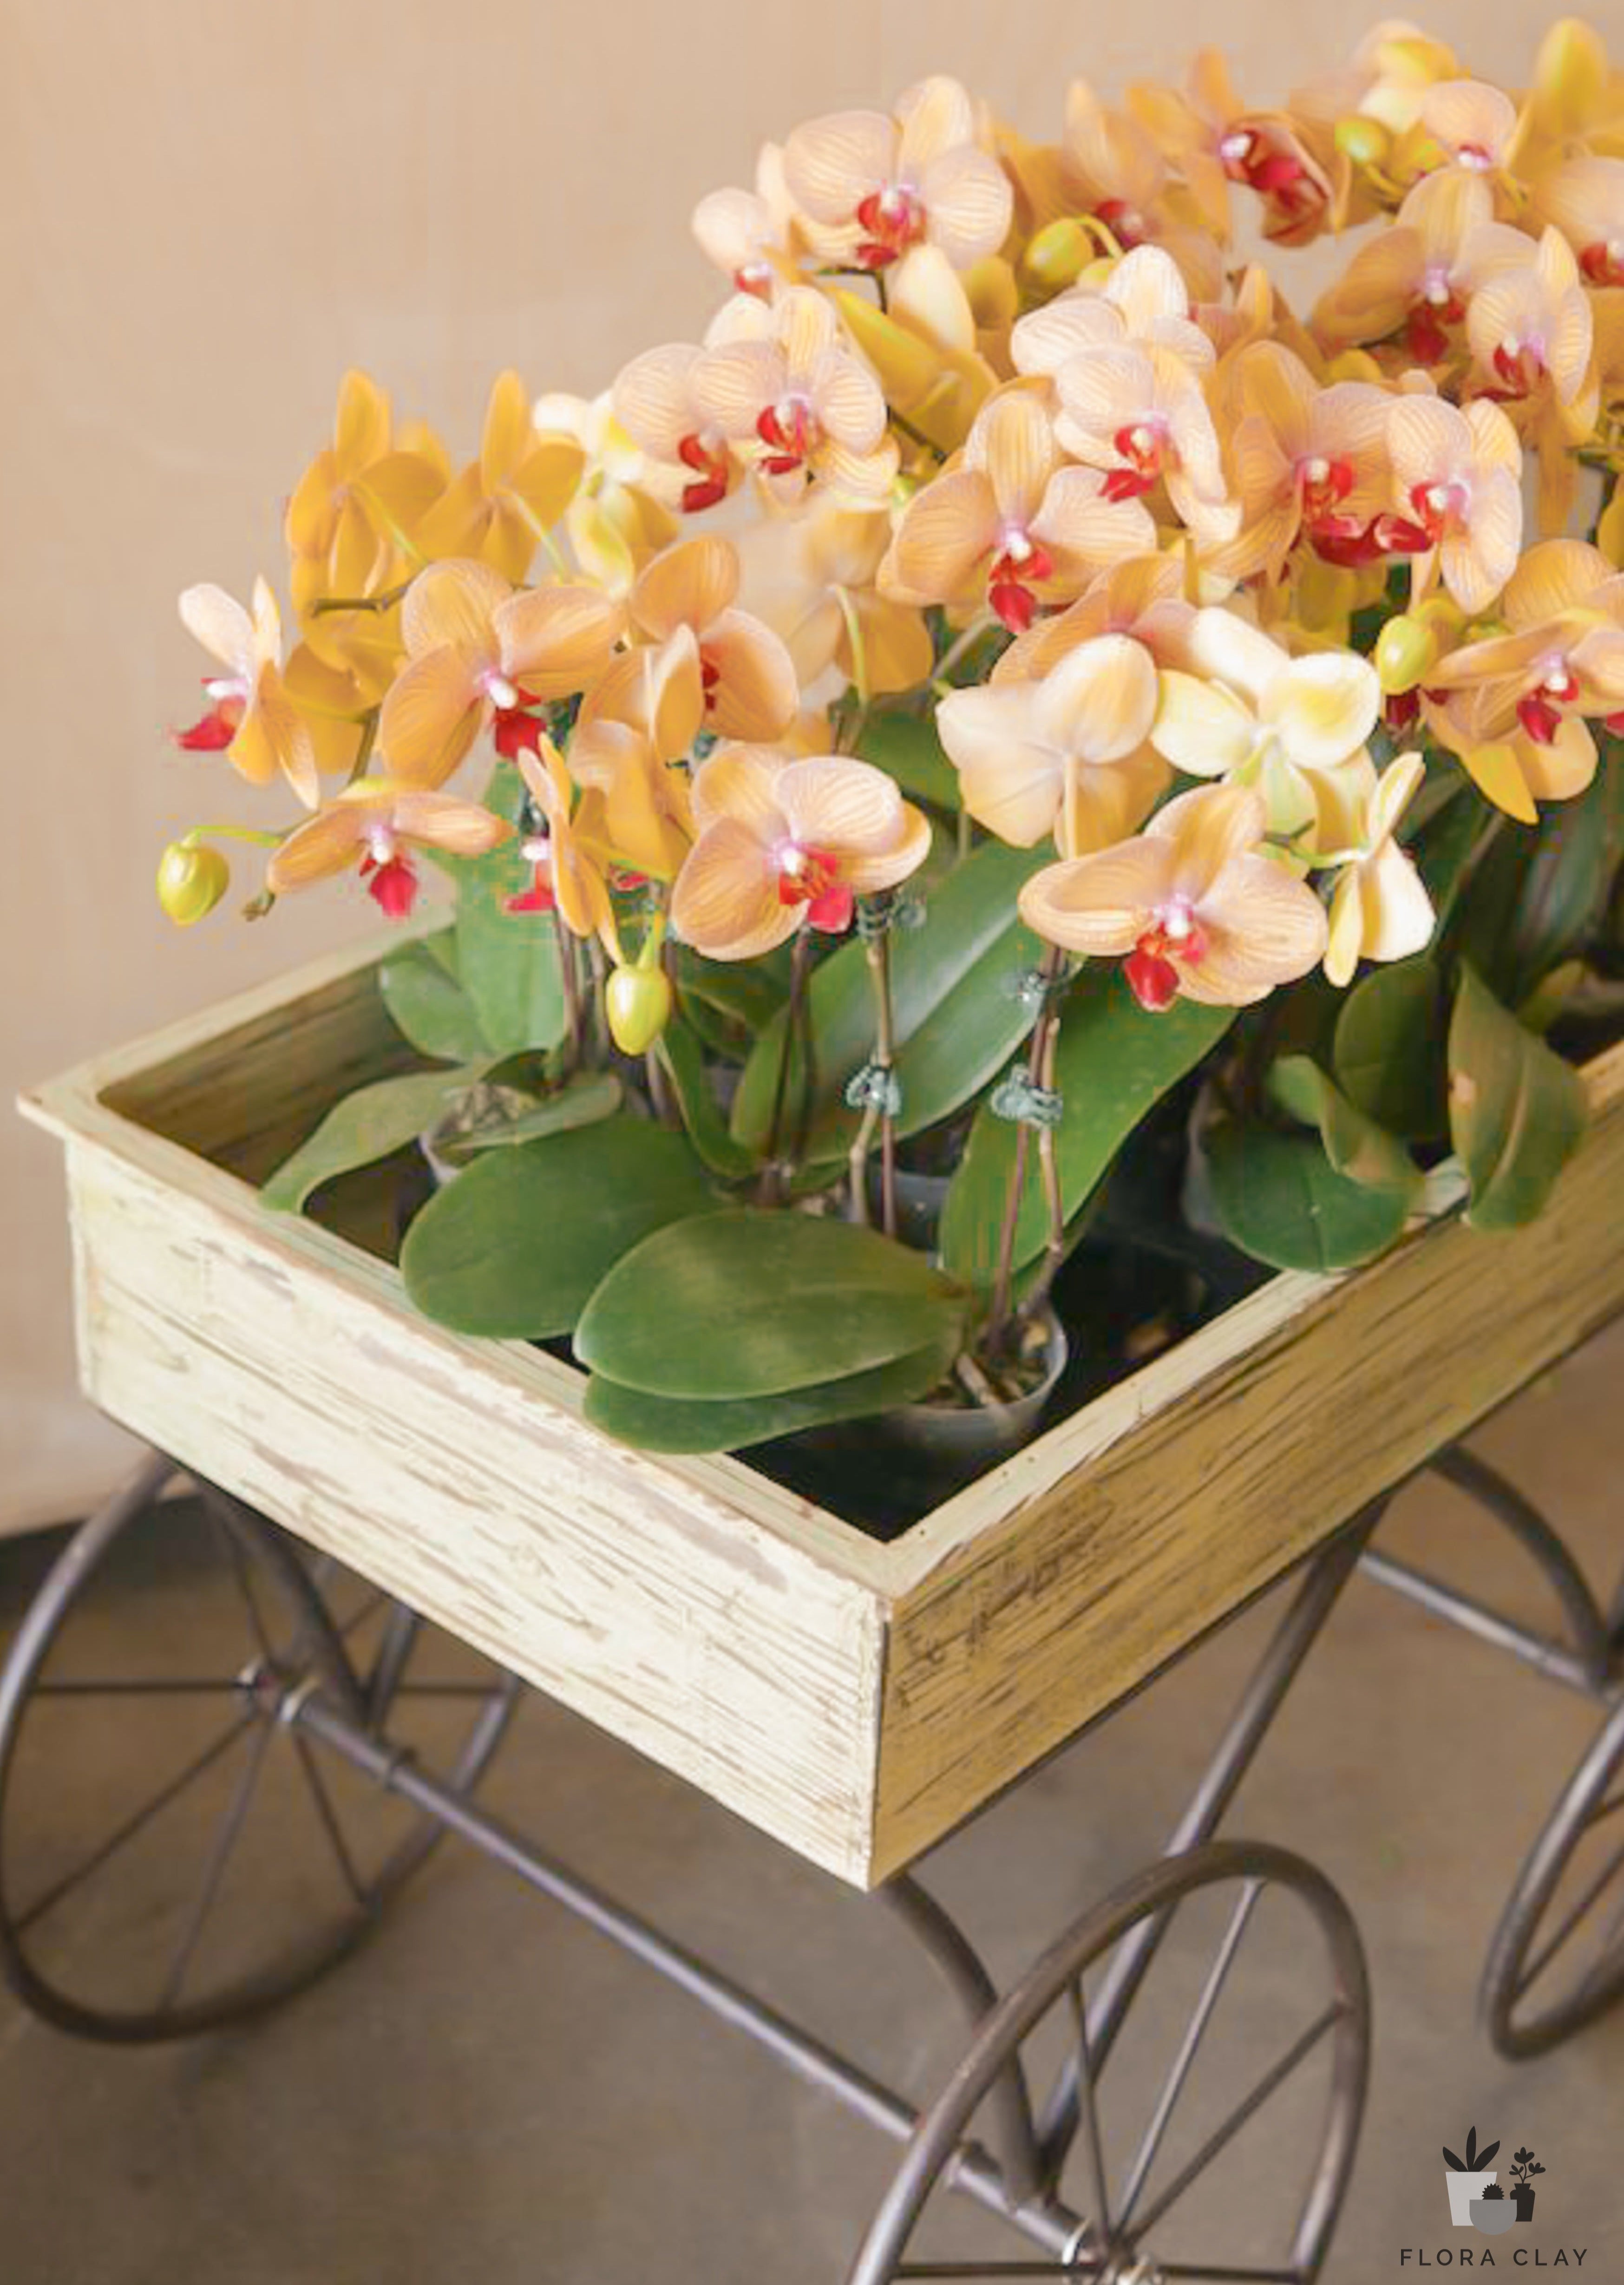 Mini Orchids 15 POTS